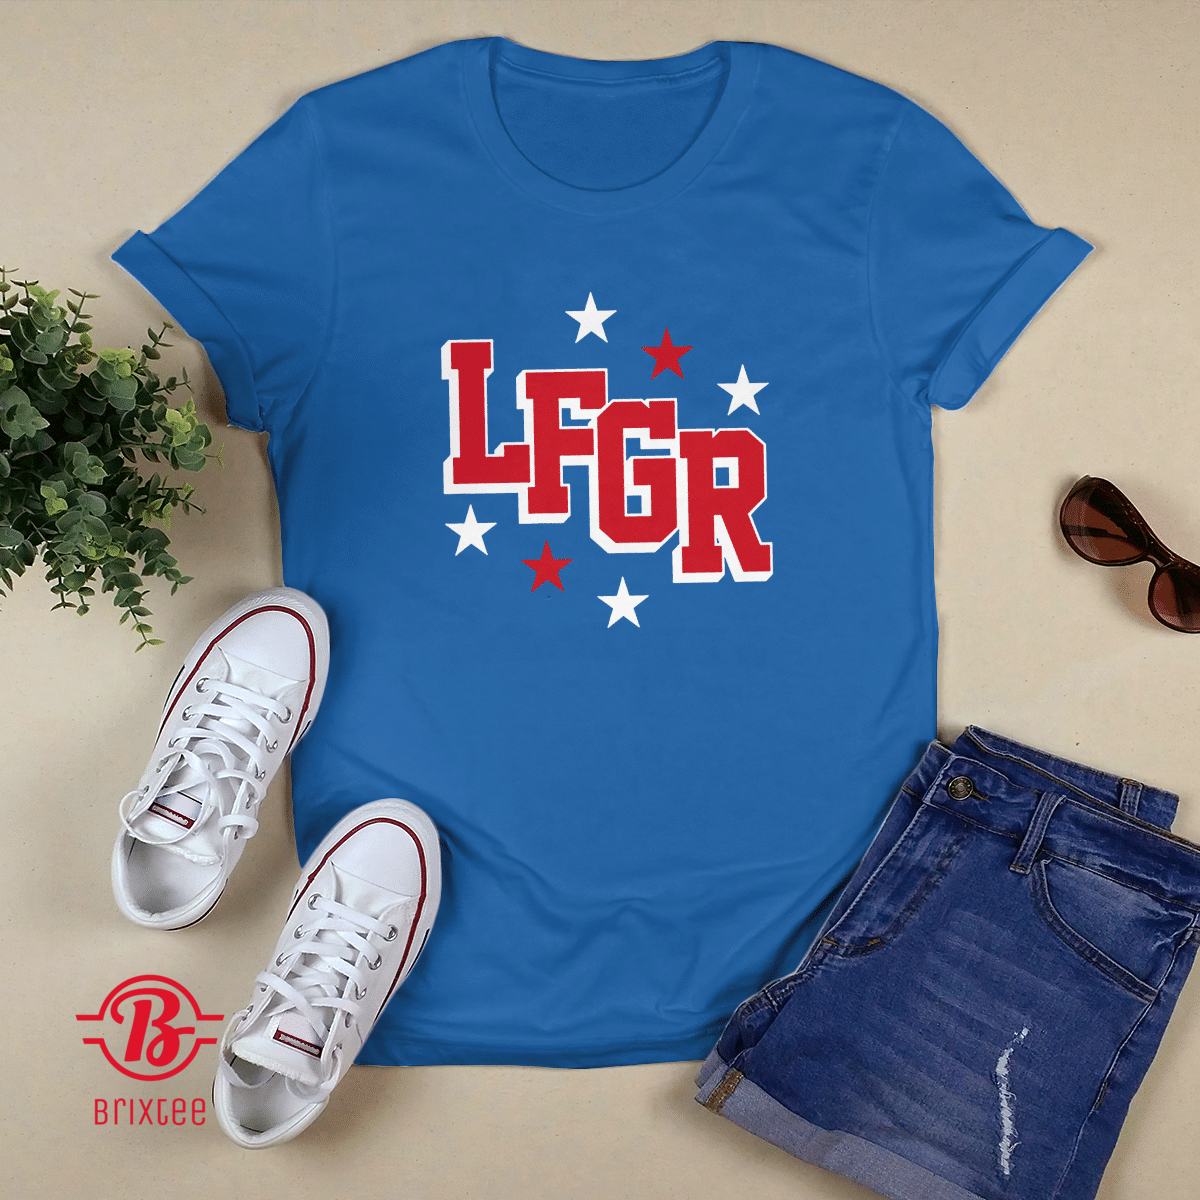 New York Rangers LFGR